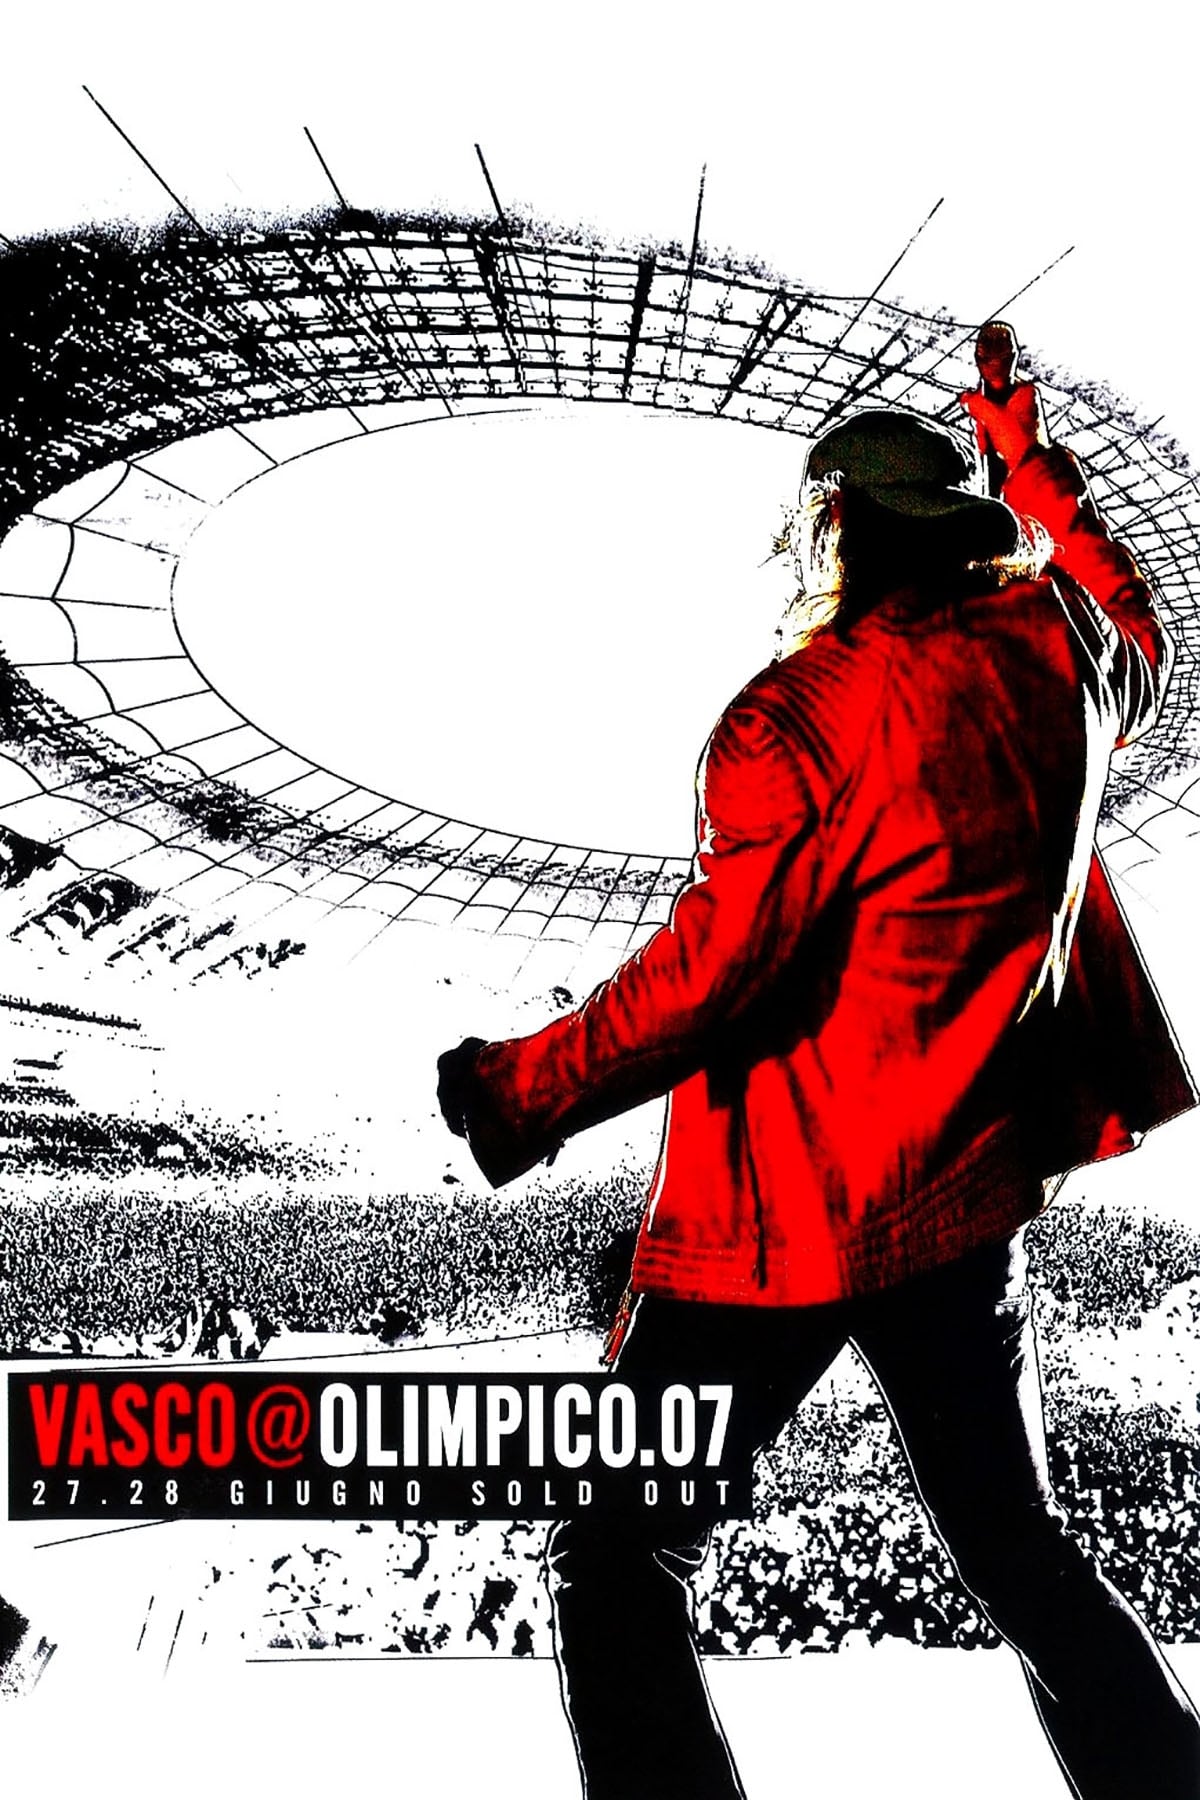 Vasco Rossi @Olimpico.07